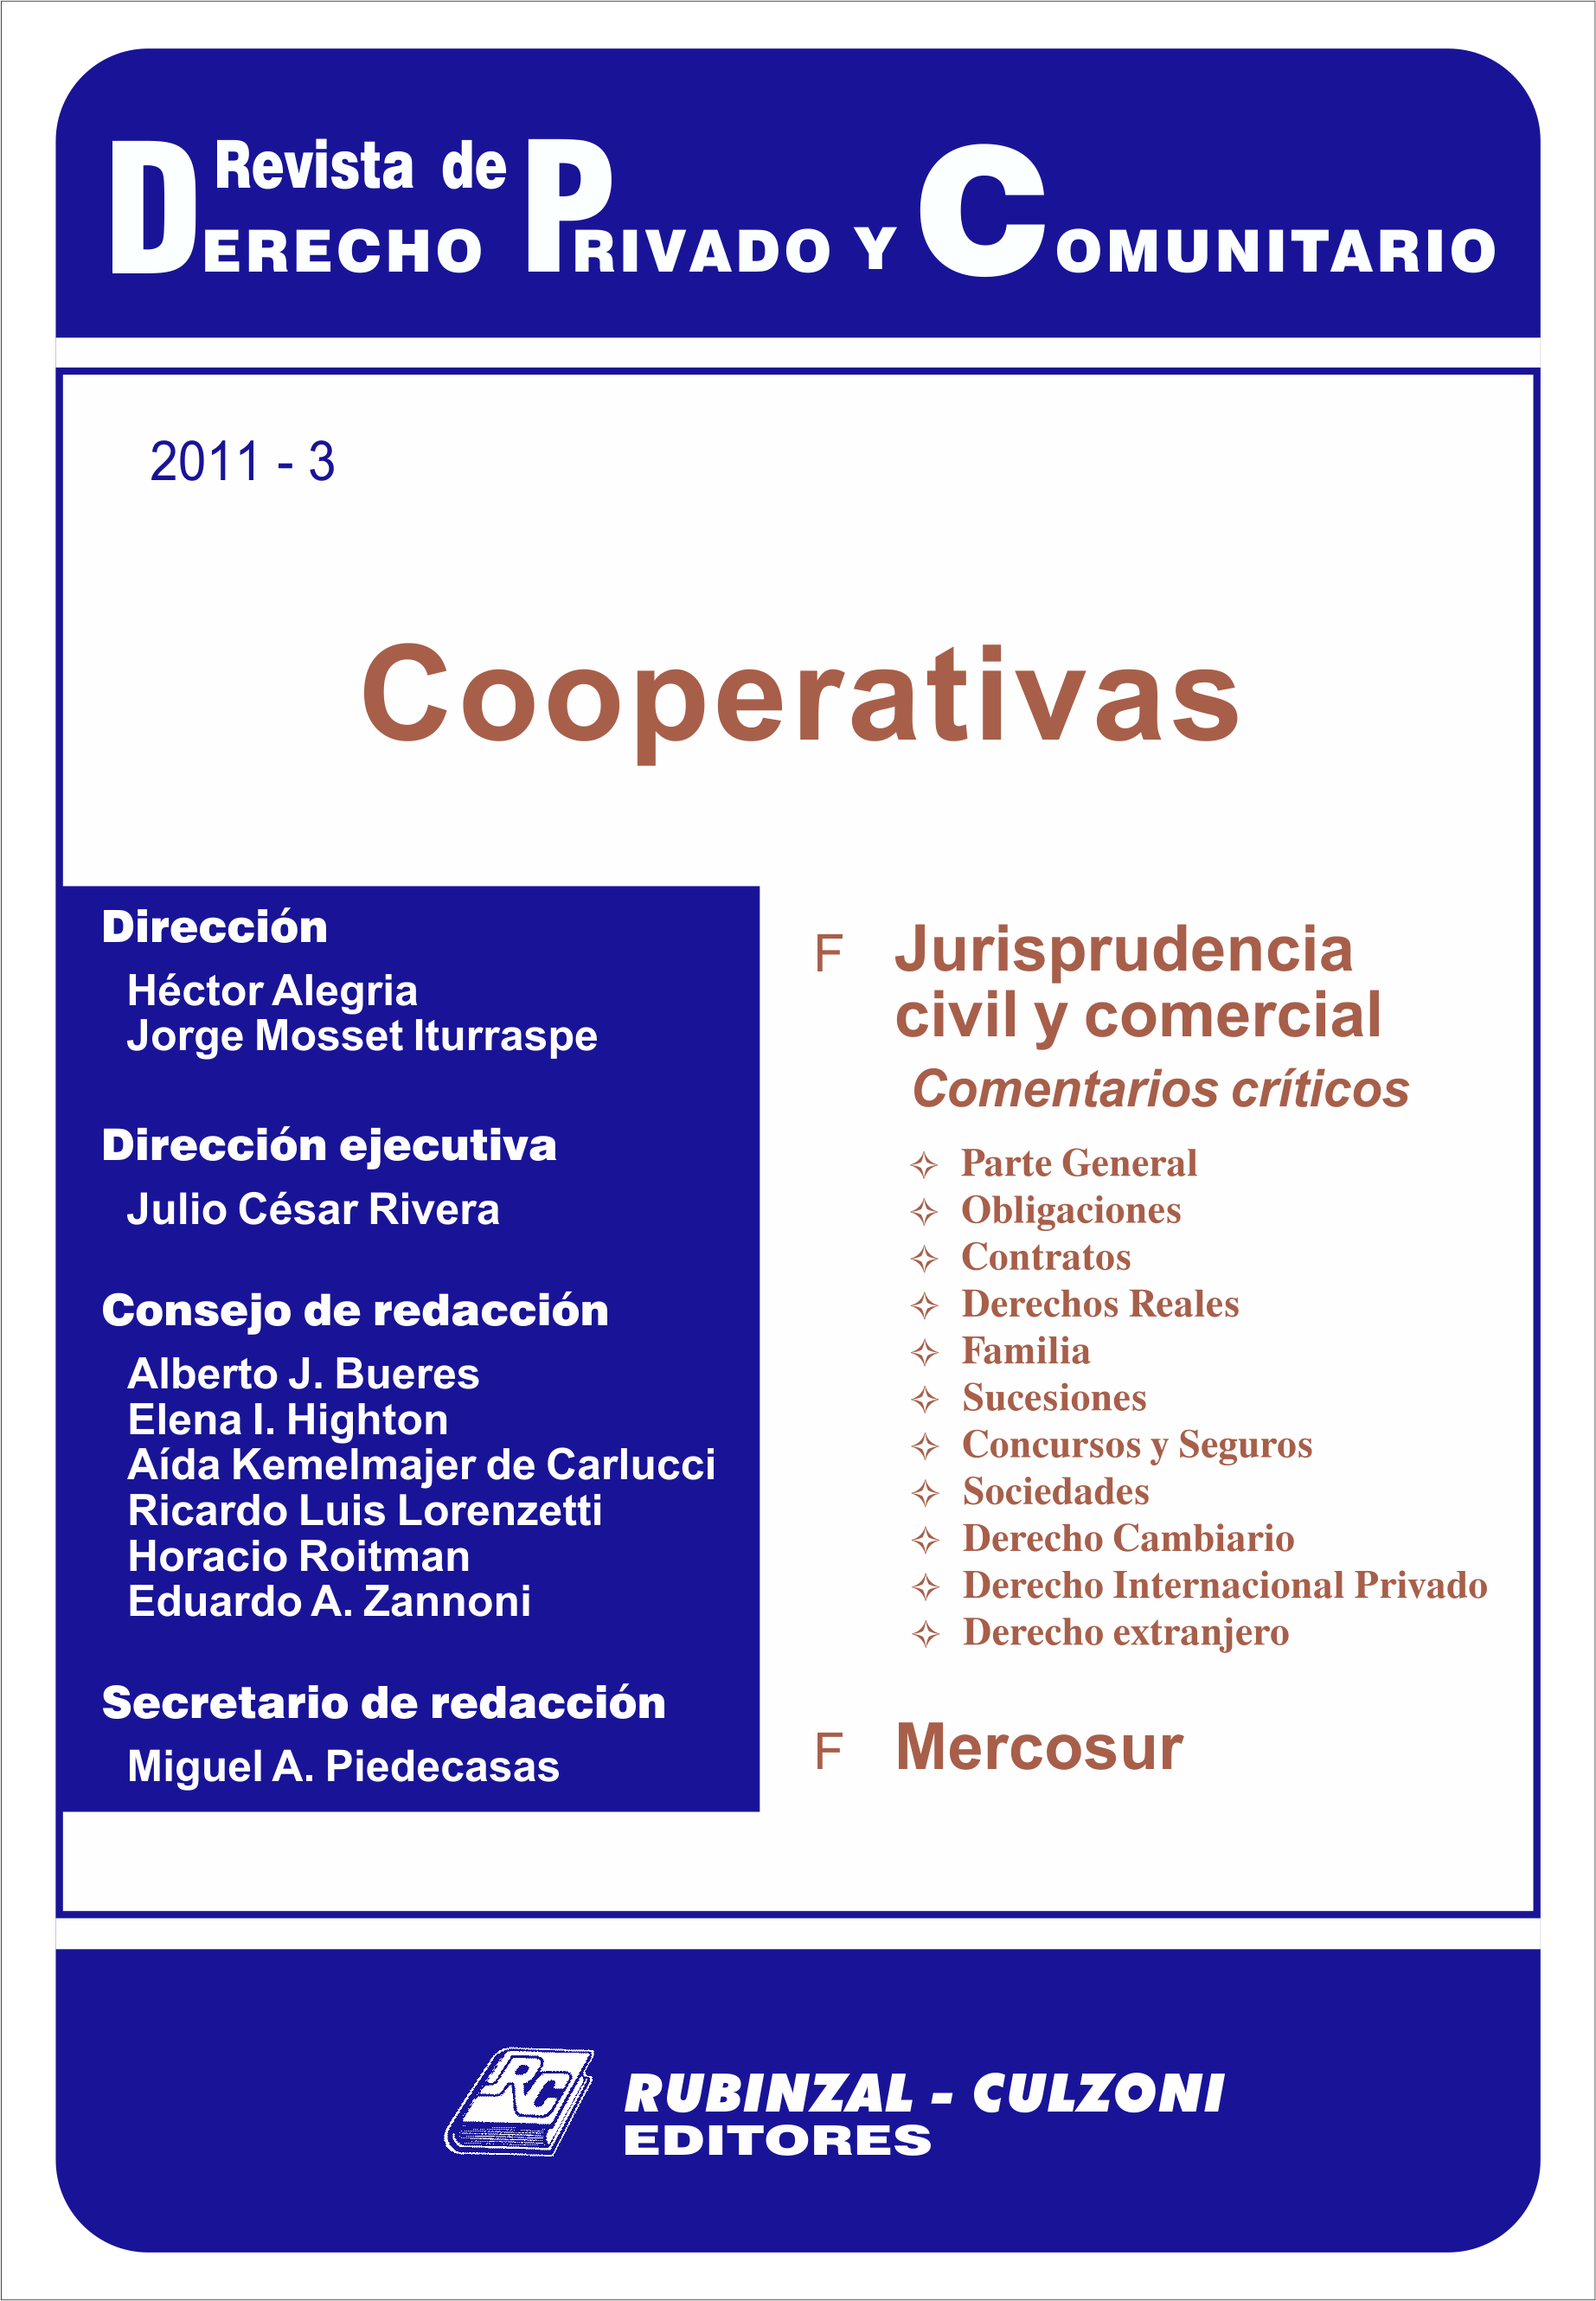 Revista de Derecho Privado y Comunitario - Cooperativas